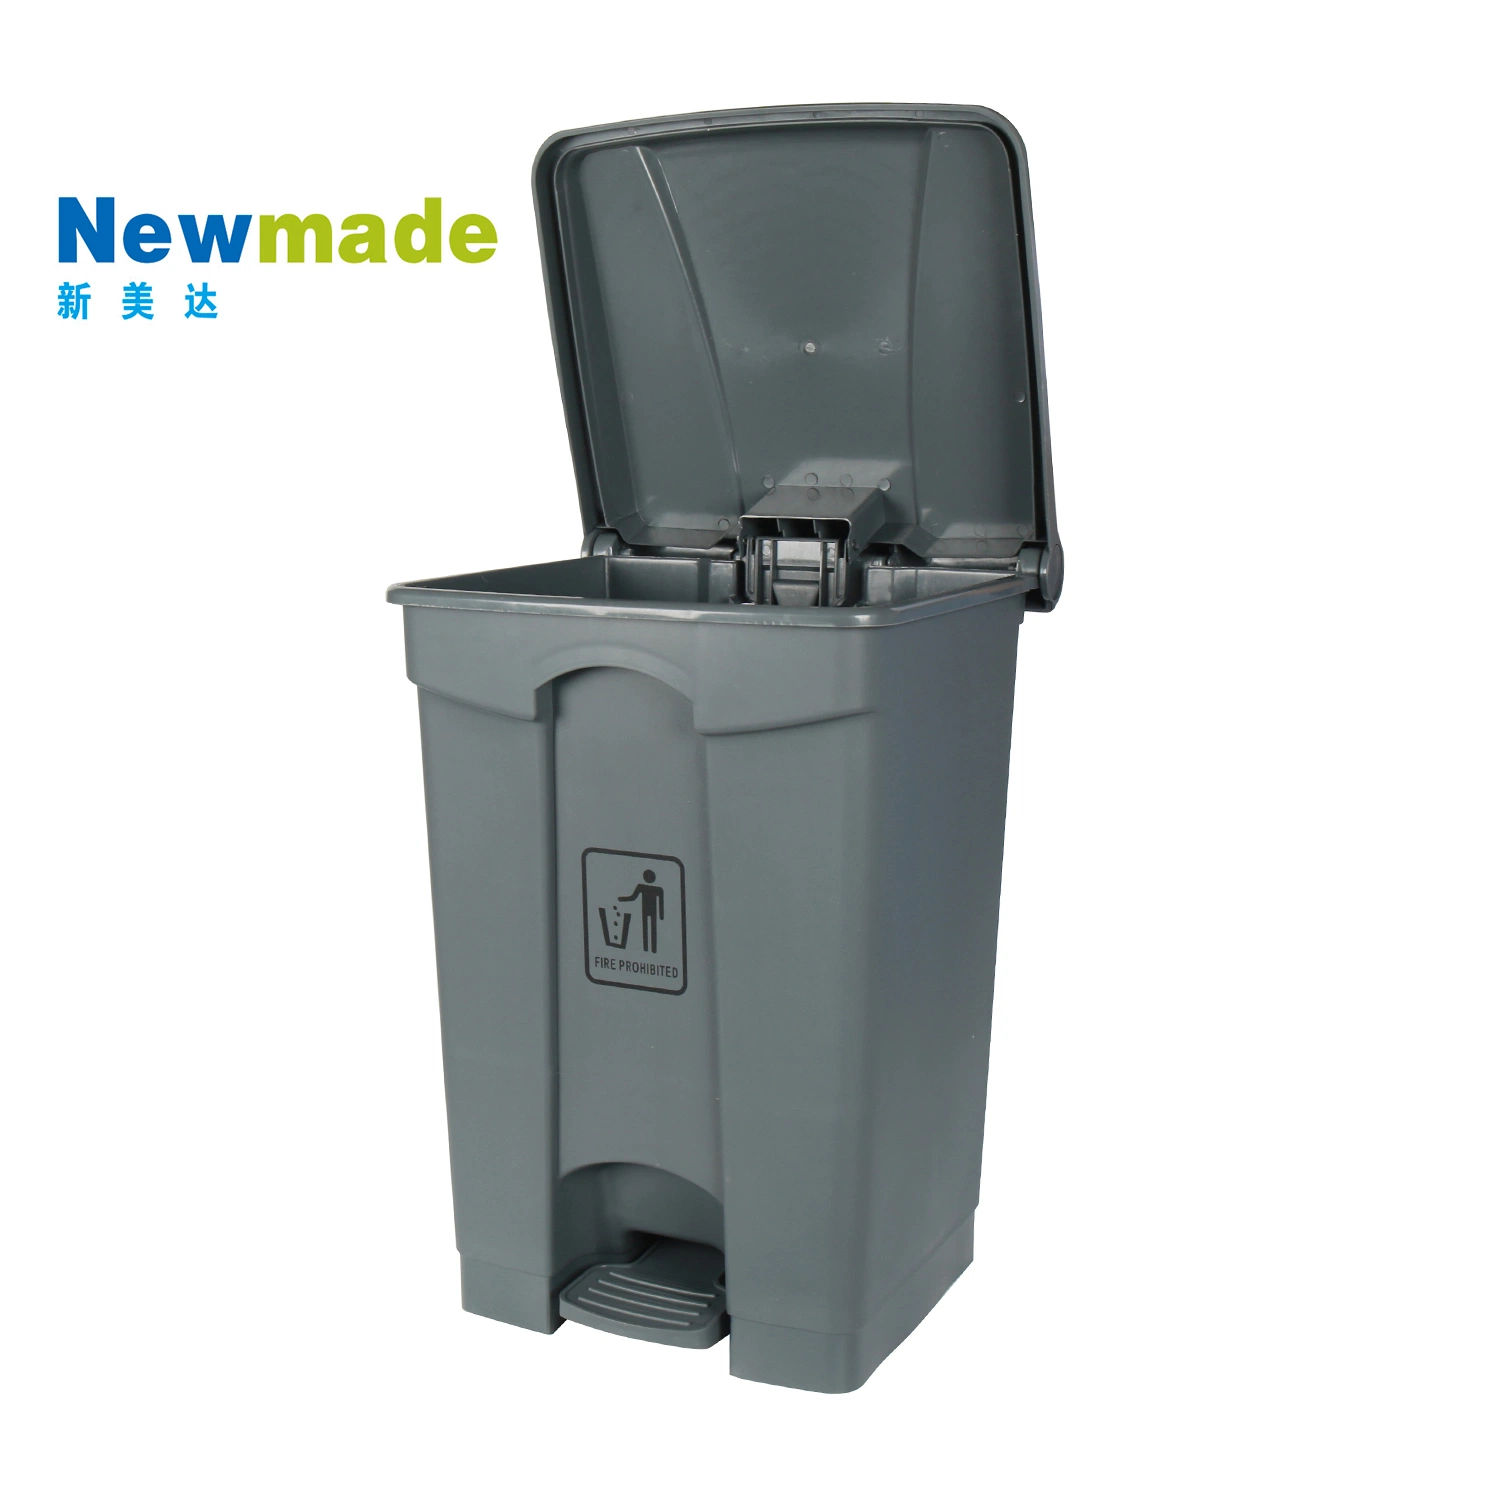 68loutdoor мусор может перерабатывать в мусорное ведро пластмассовых отходов мусора вывоз мусора бен